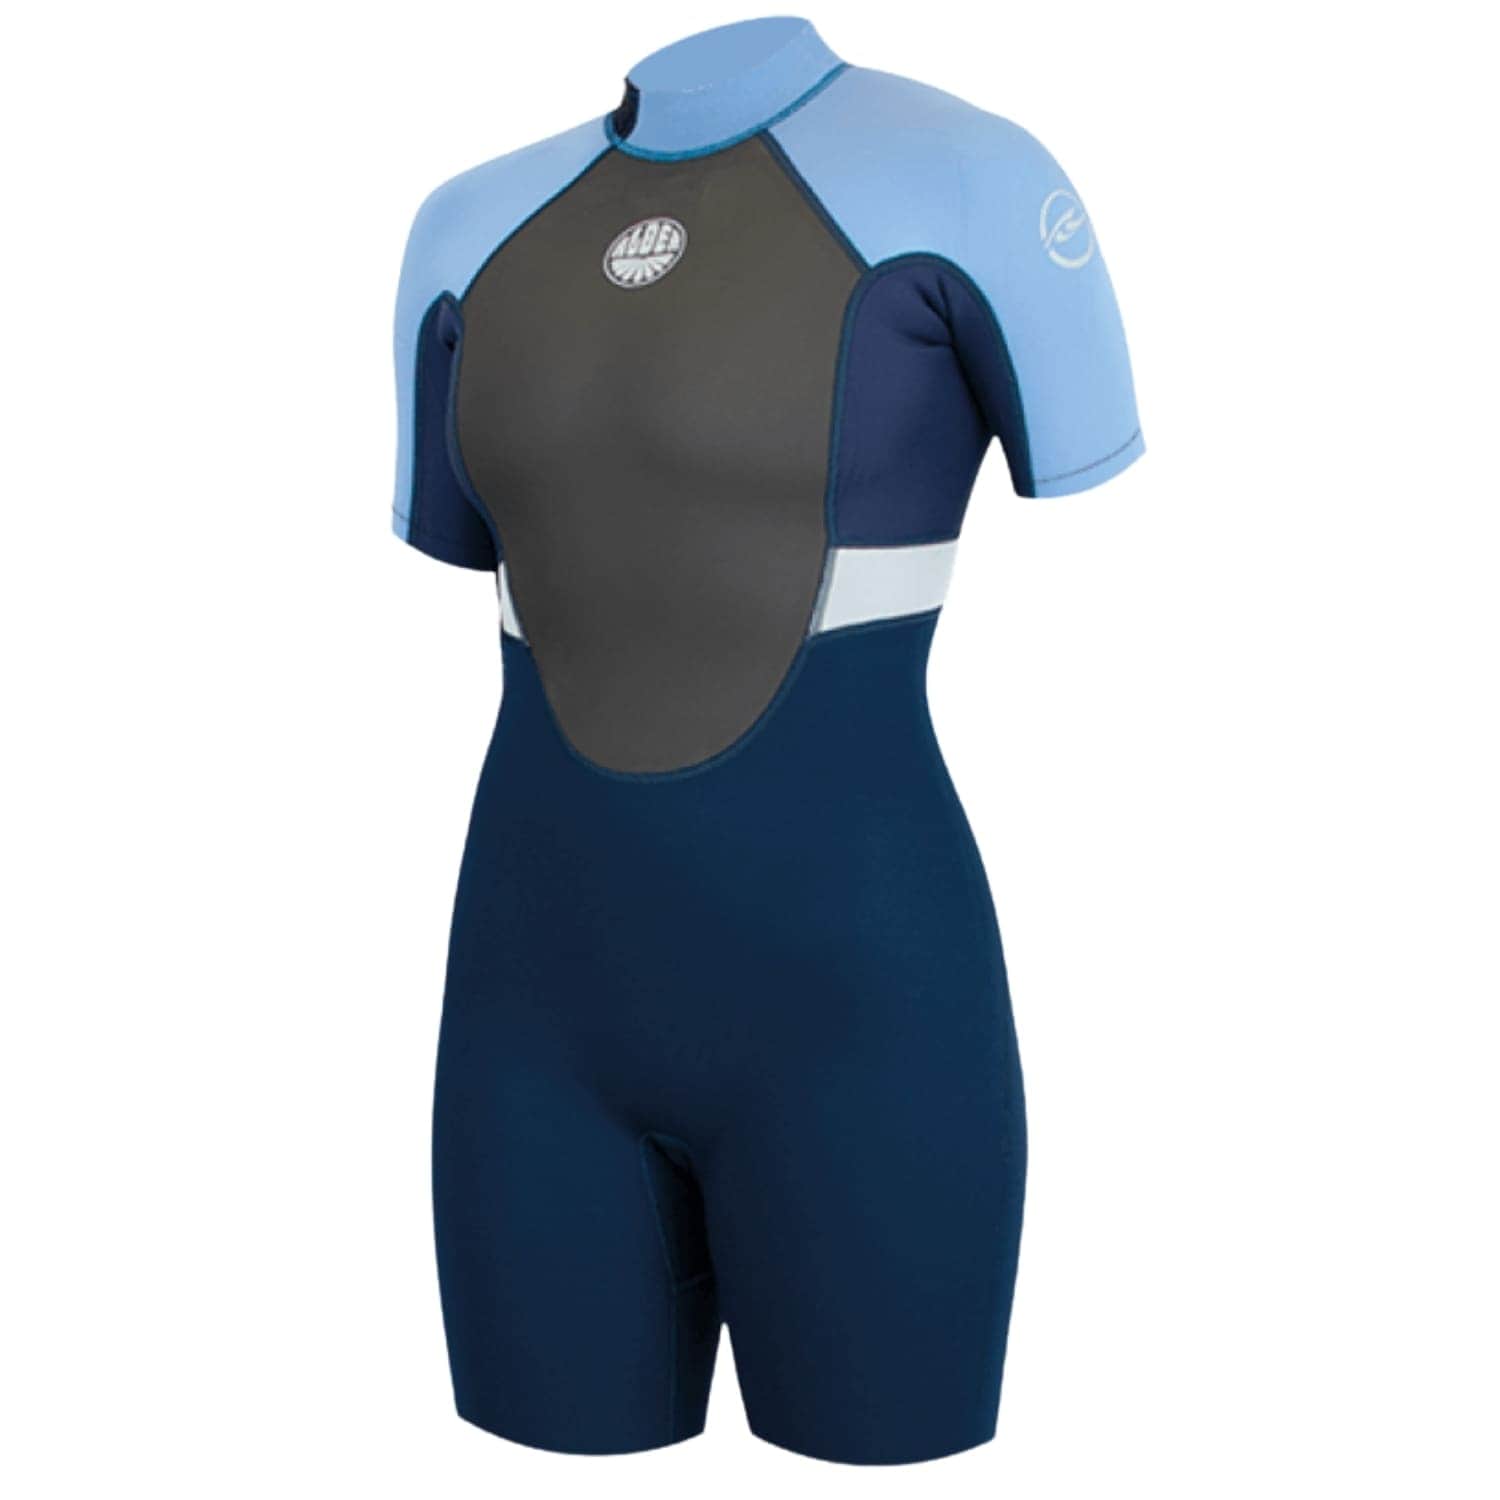 Alder Womens Impact 3/2mm Shortie Wetsuit 2021 - Blue